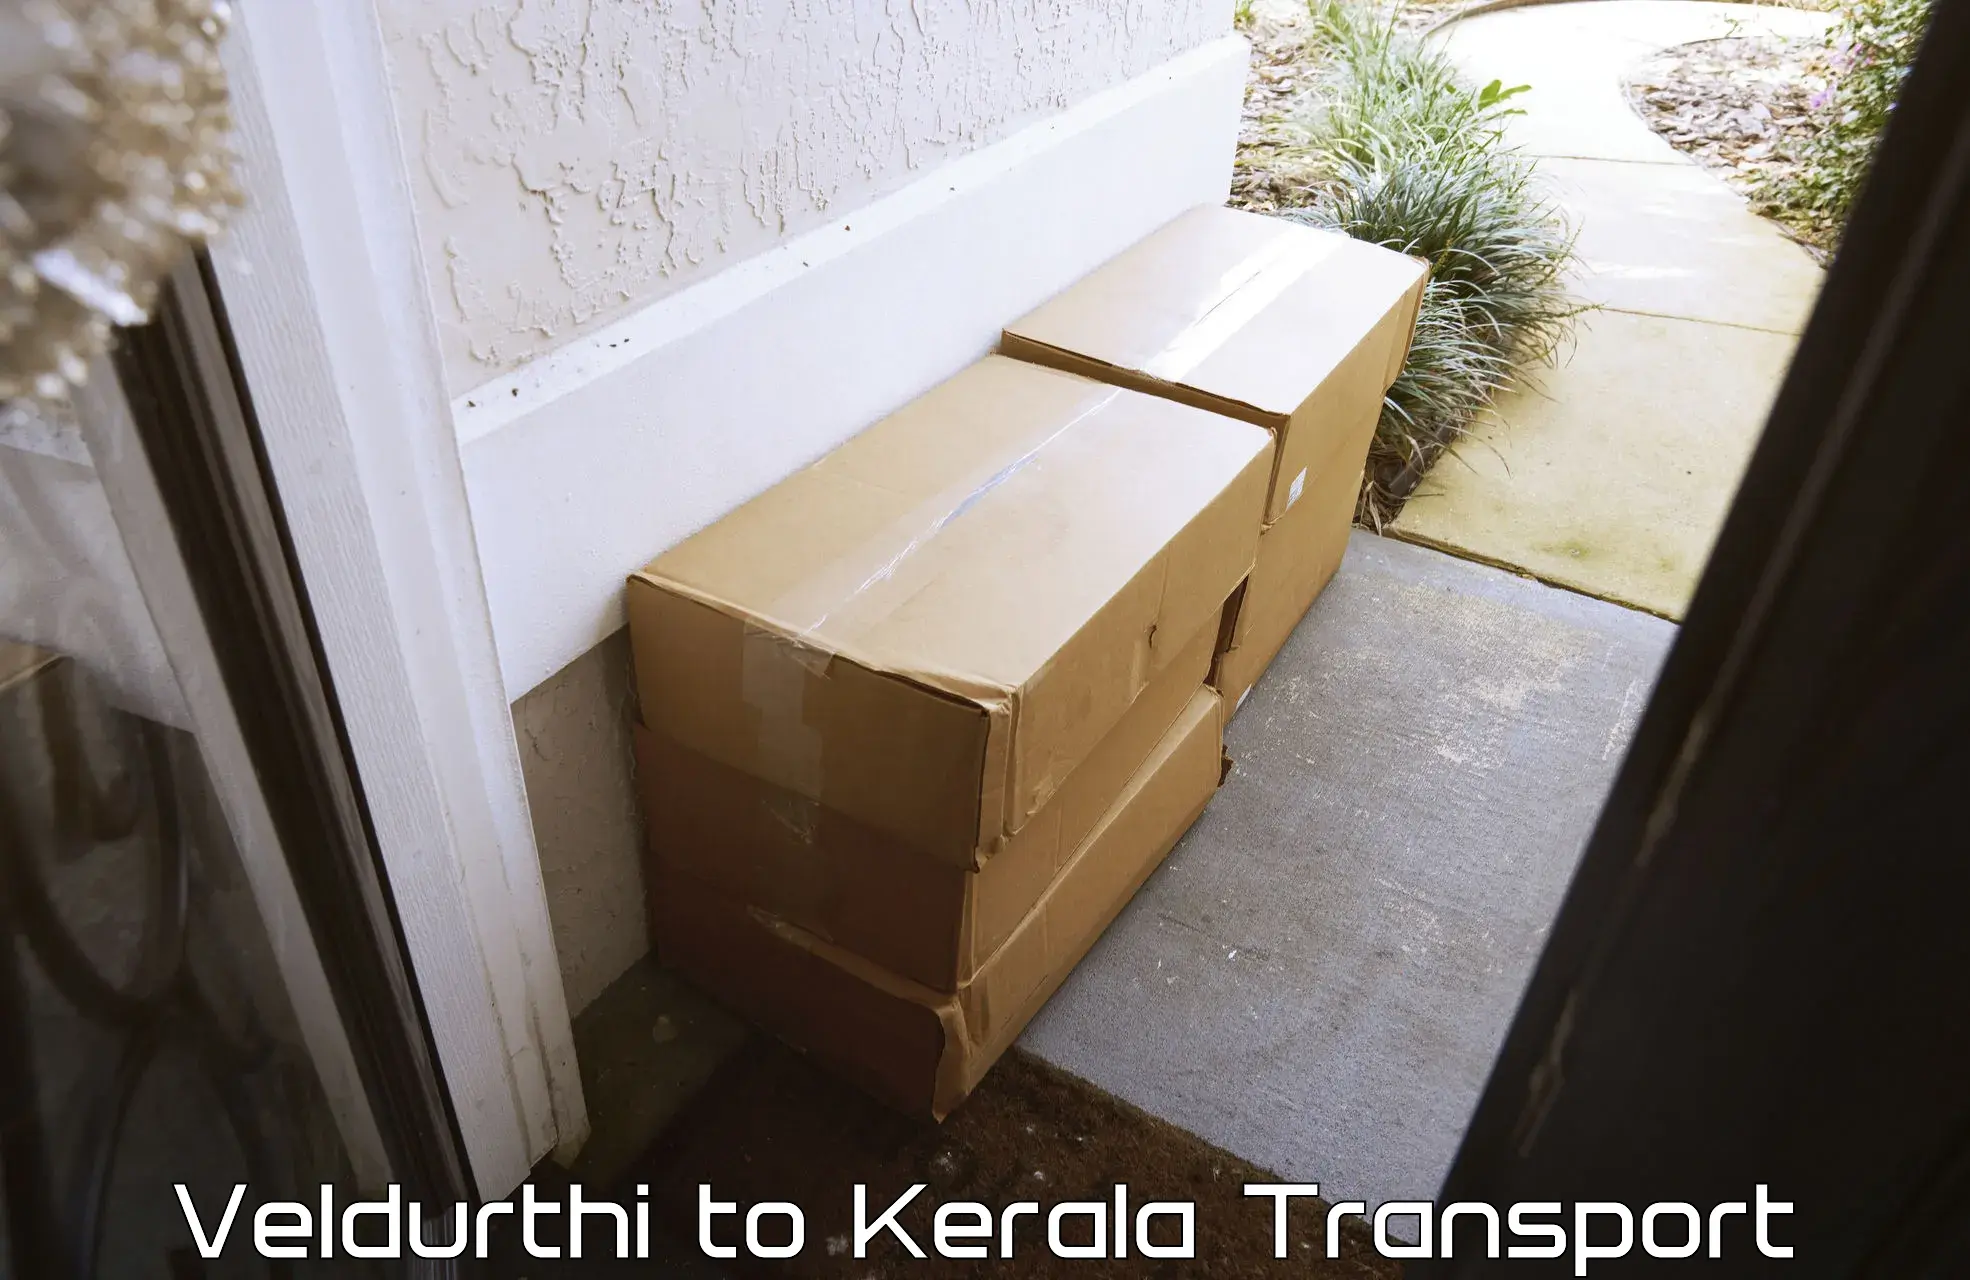 Vehicle transport services Veldurthi to Kerala